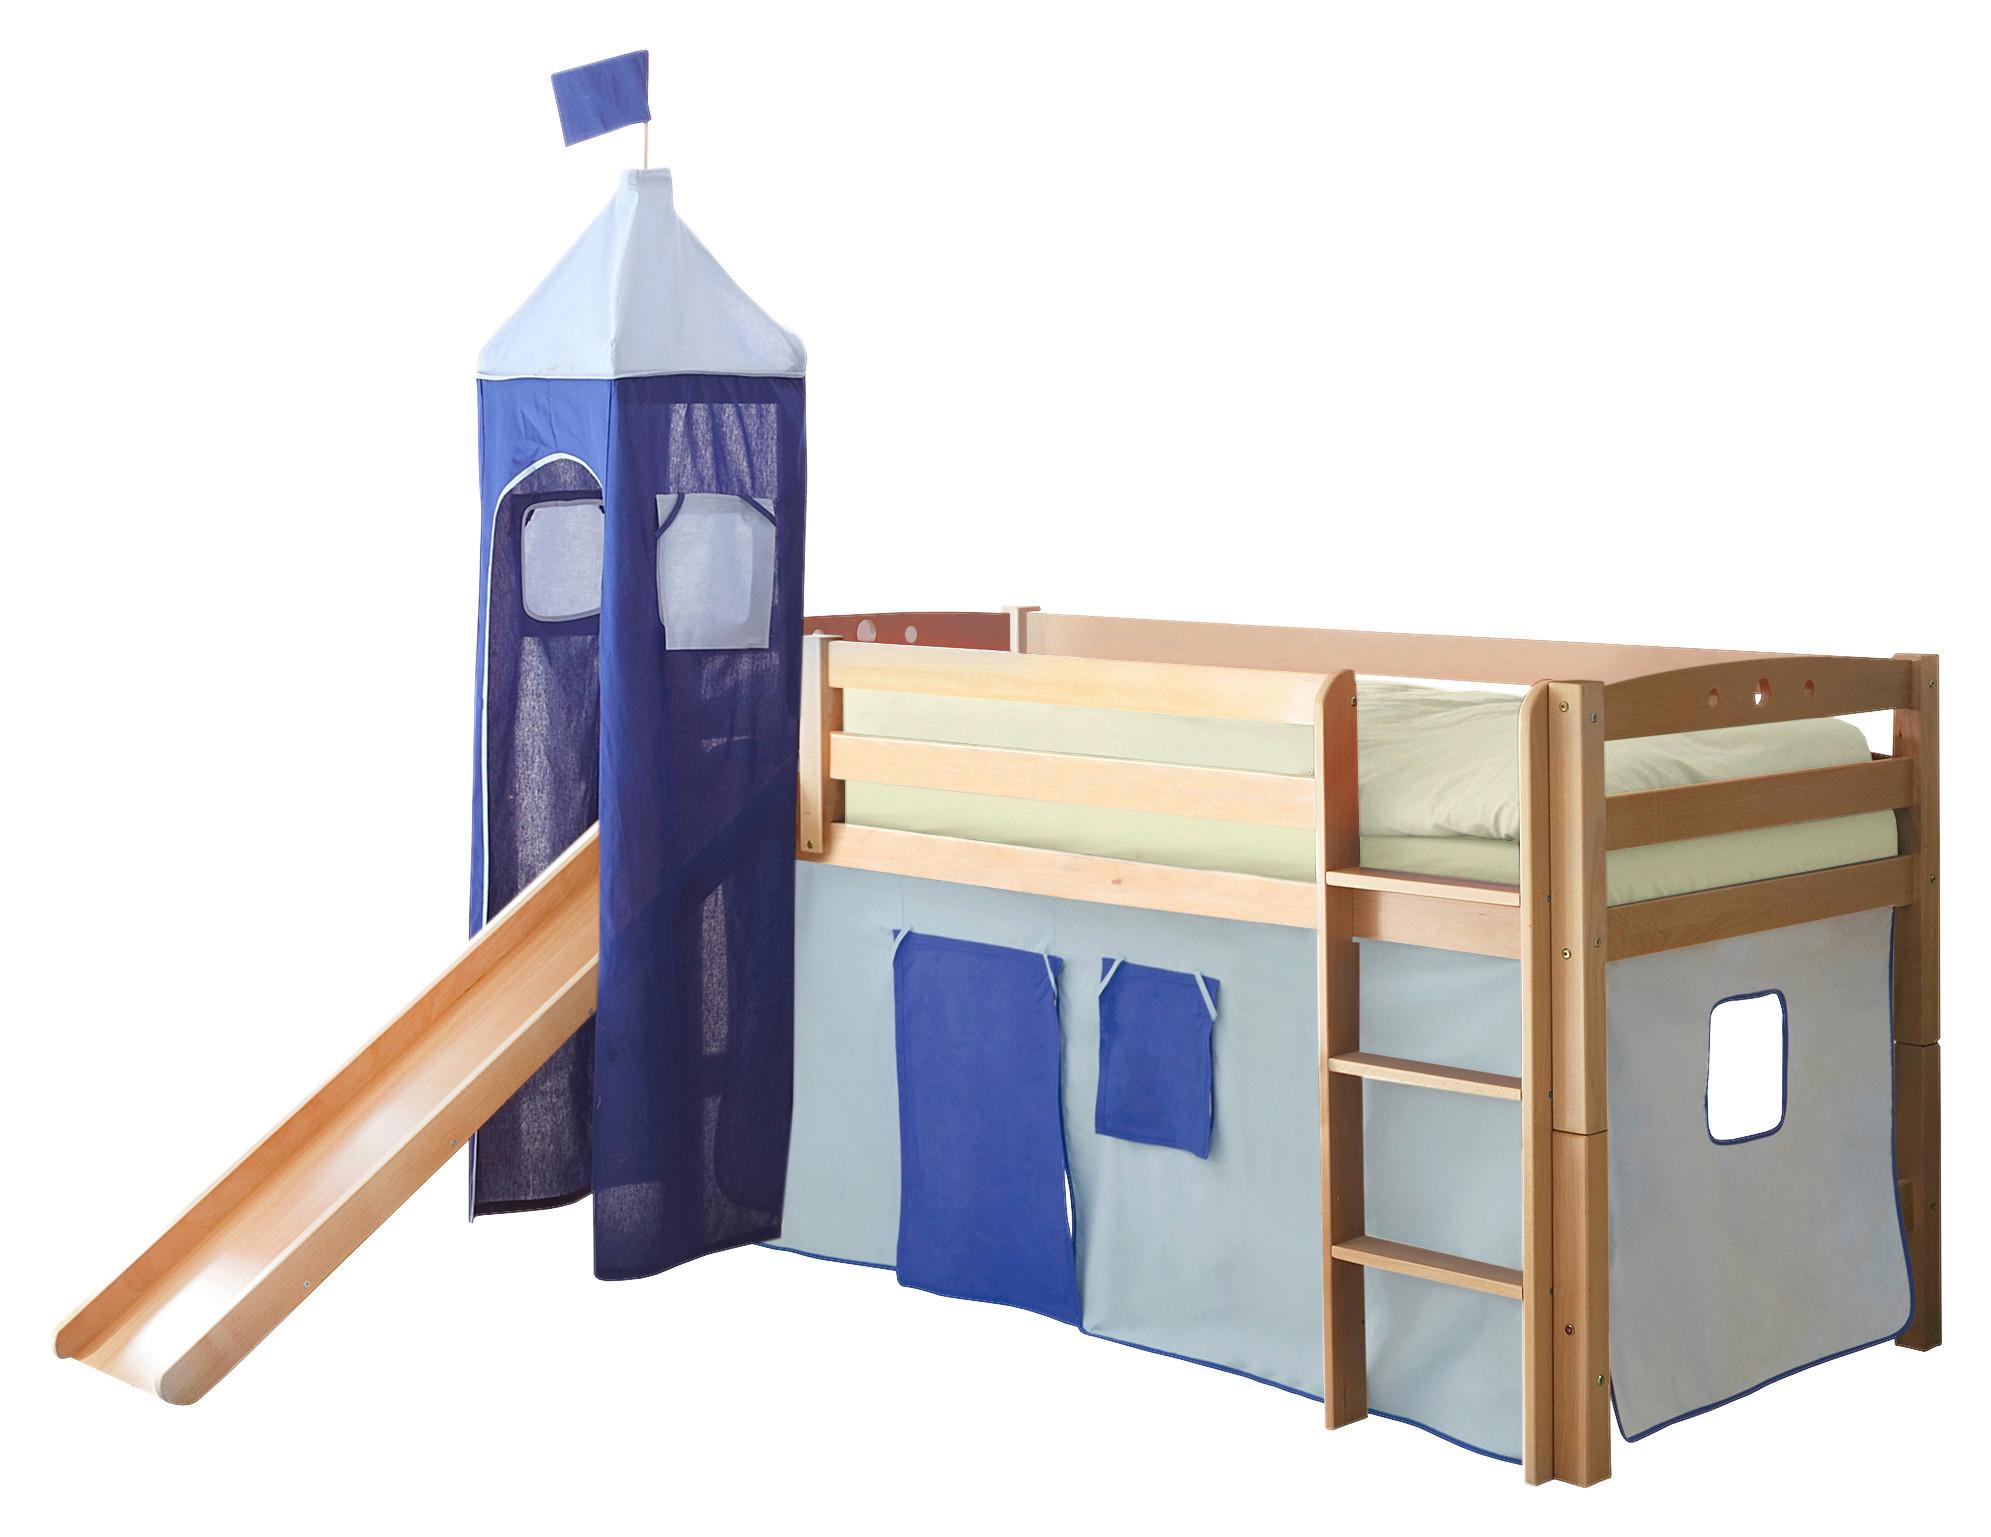 Spielbett "Toby R", aus Buche, naturfarbe/hellblau/dunkelblau - Naturfarben/Dunkelblau, Natur, Holz (90/200cm) - MID.YOU